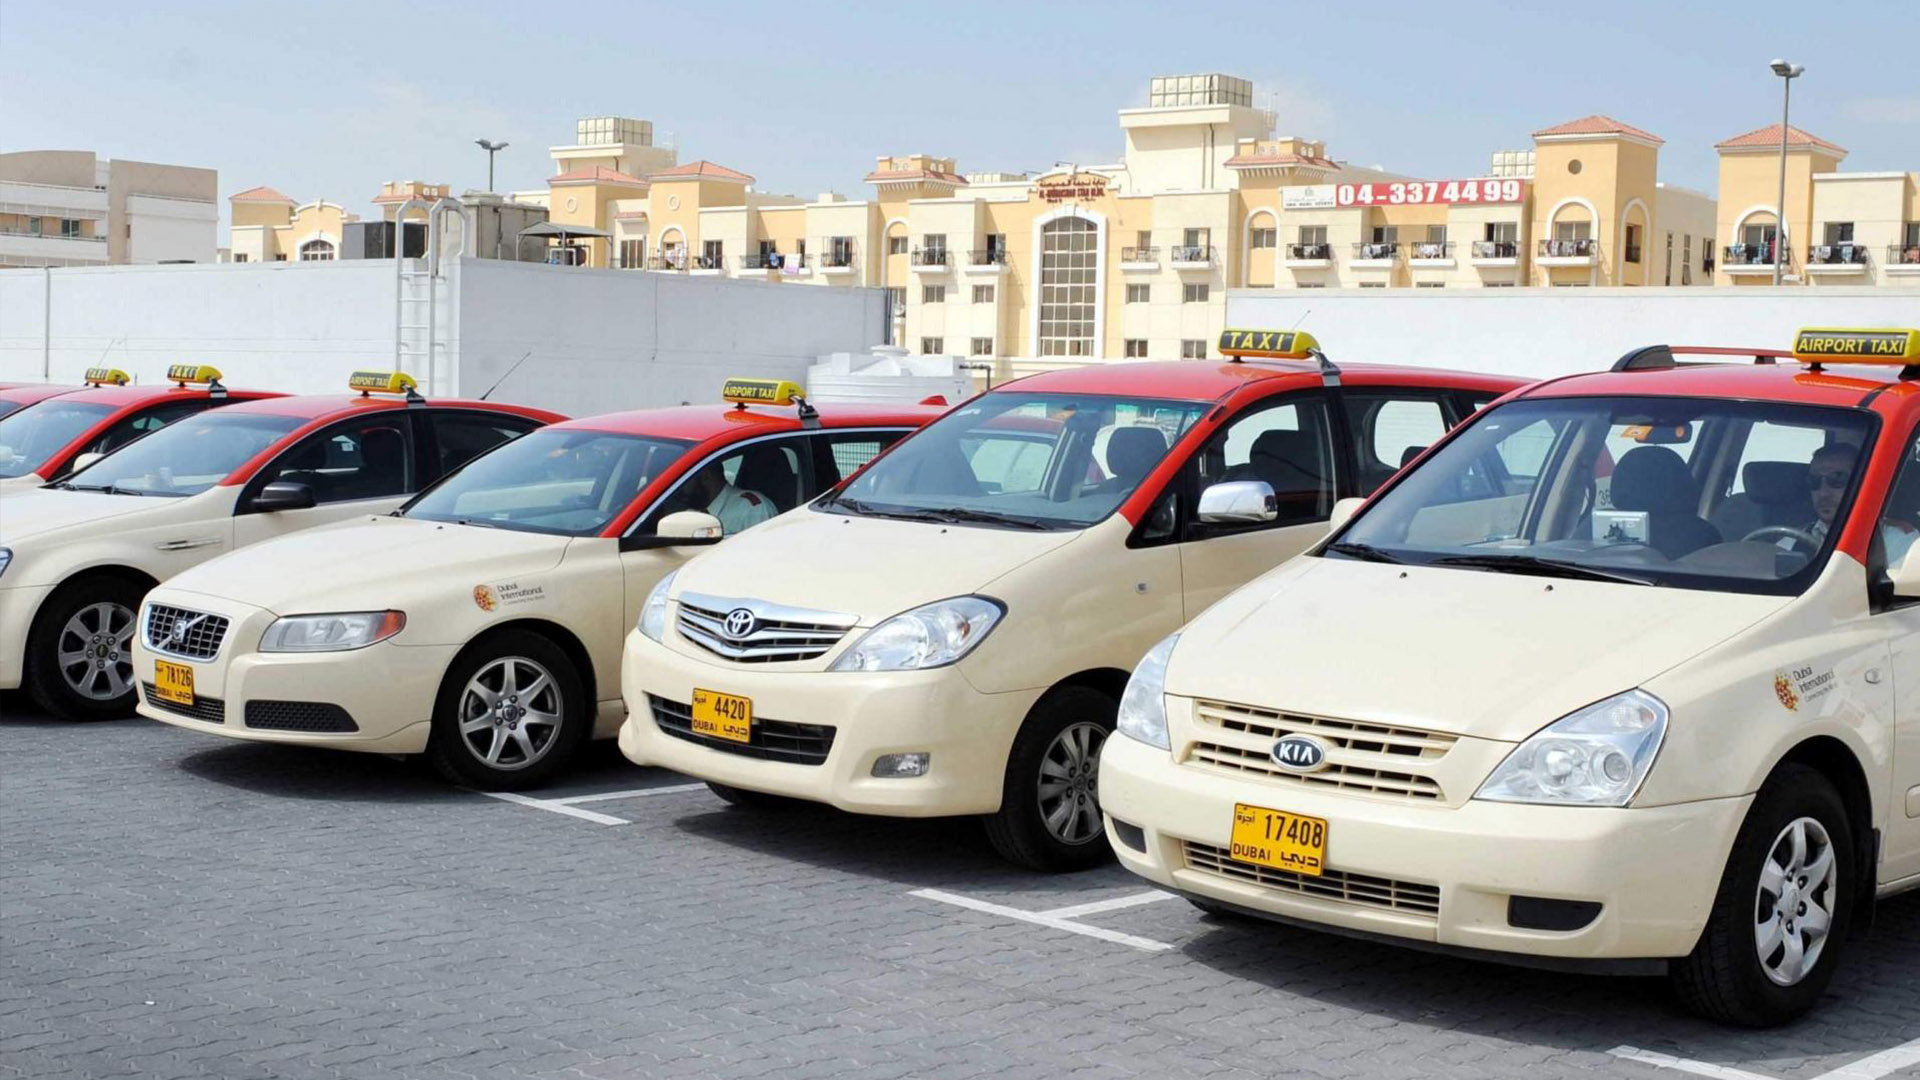 Dubai Taxi добавляет больше услуг и функций в официальное приложение DTC